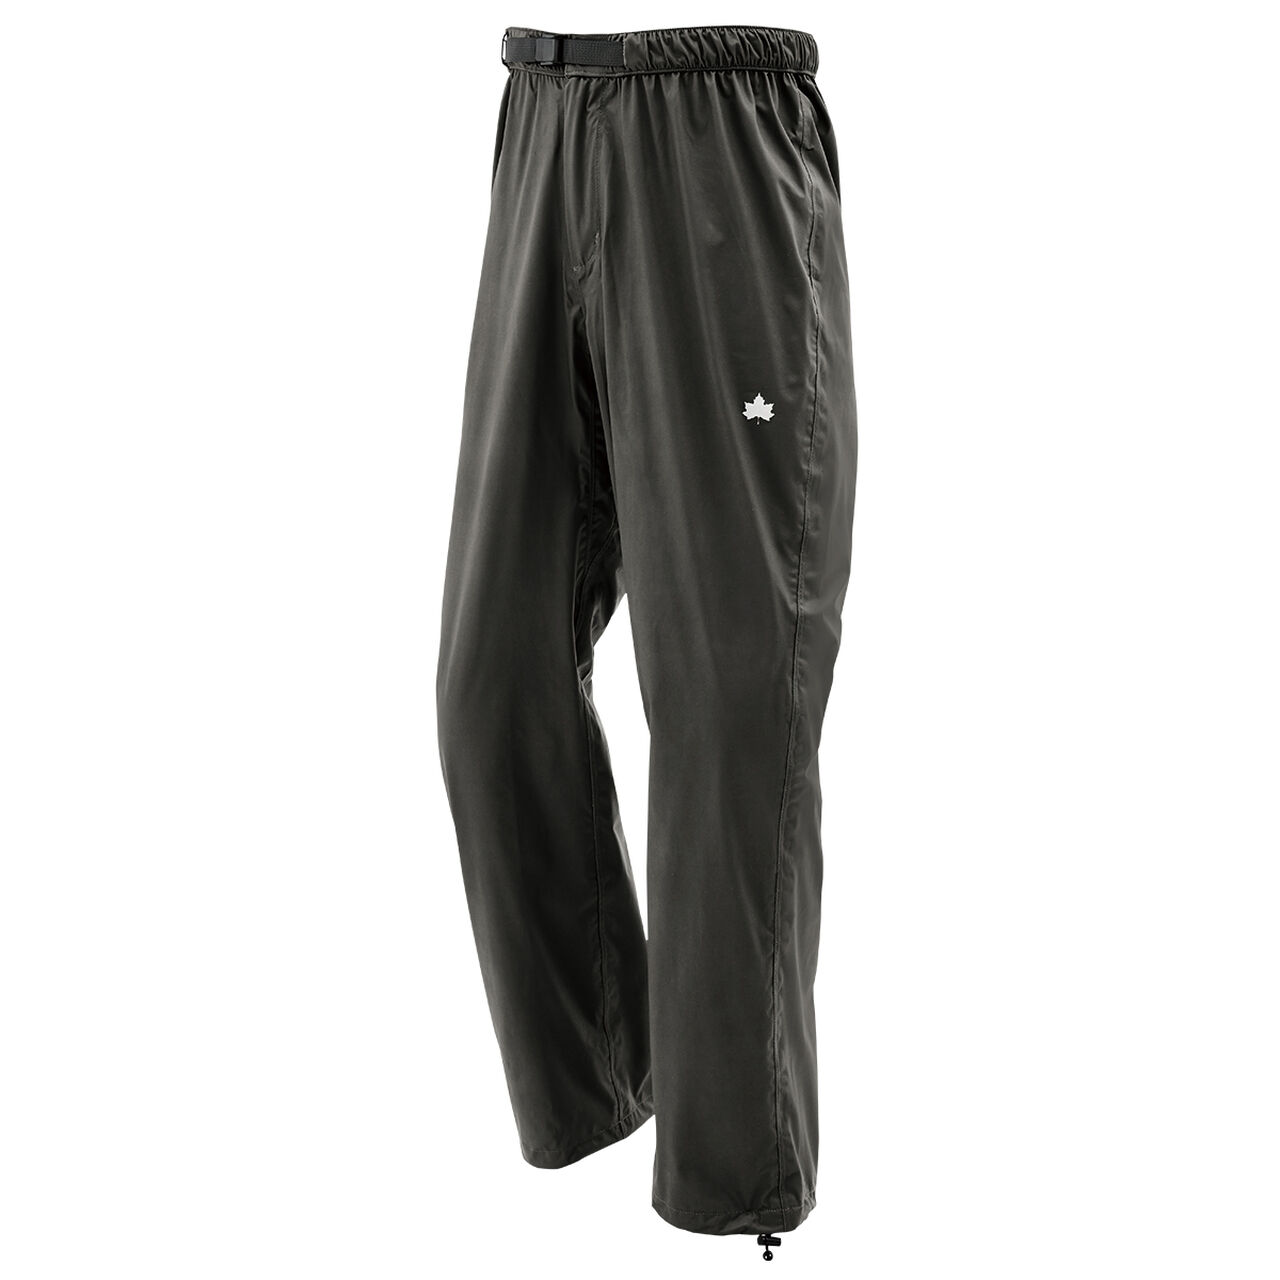 Eta 4-WAY Stretch Pants,Black, large image number 0